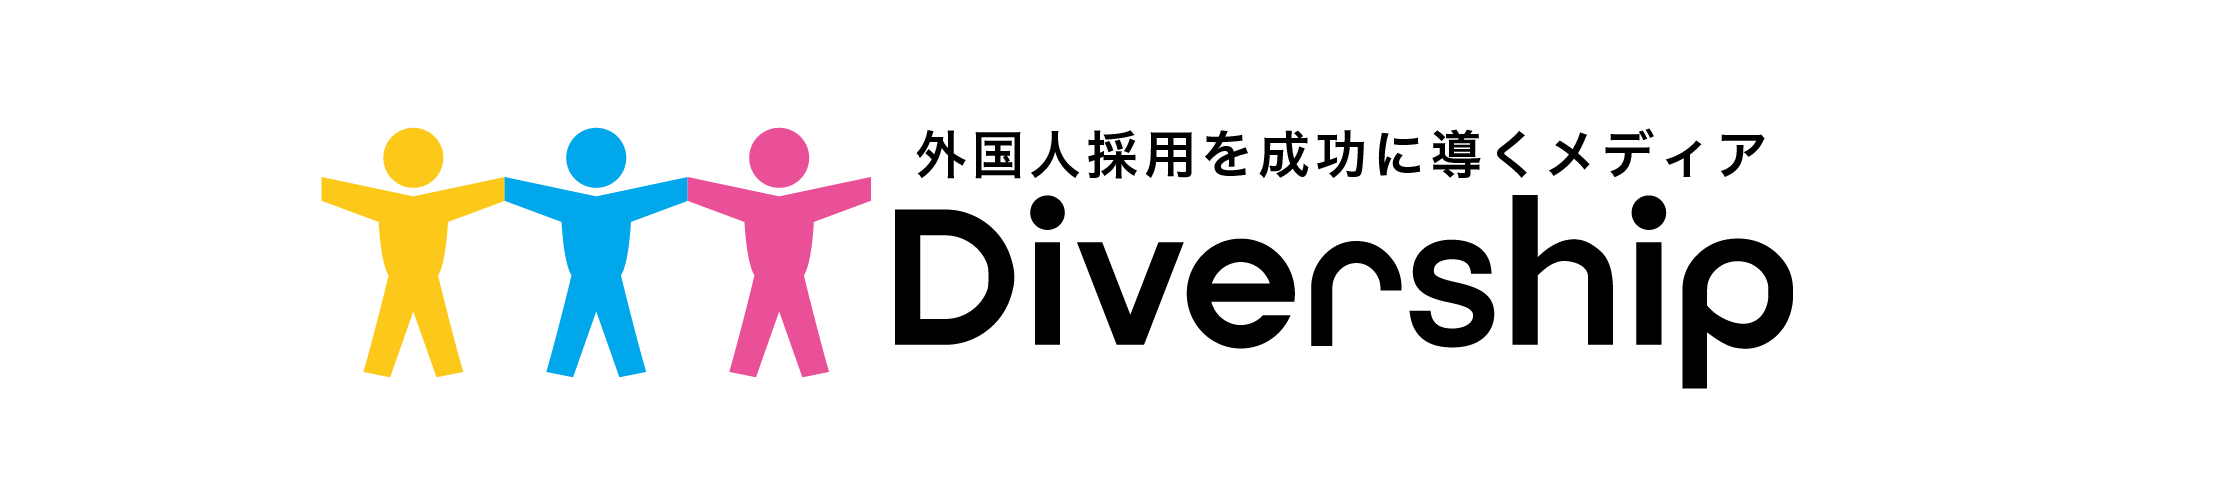 Divership